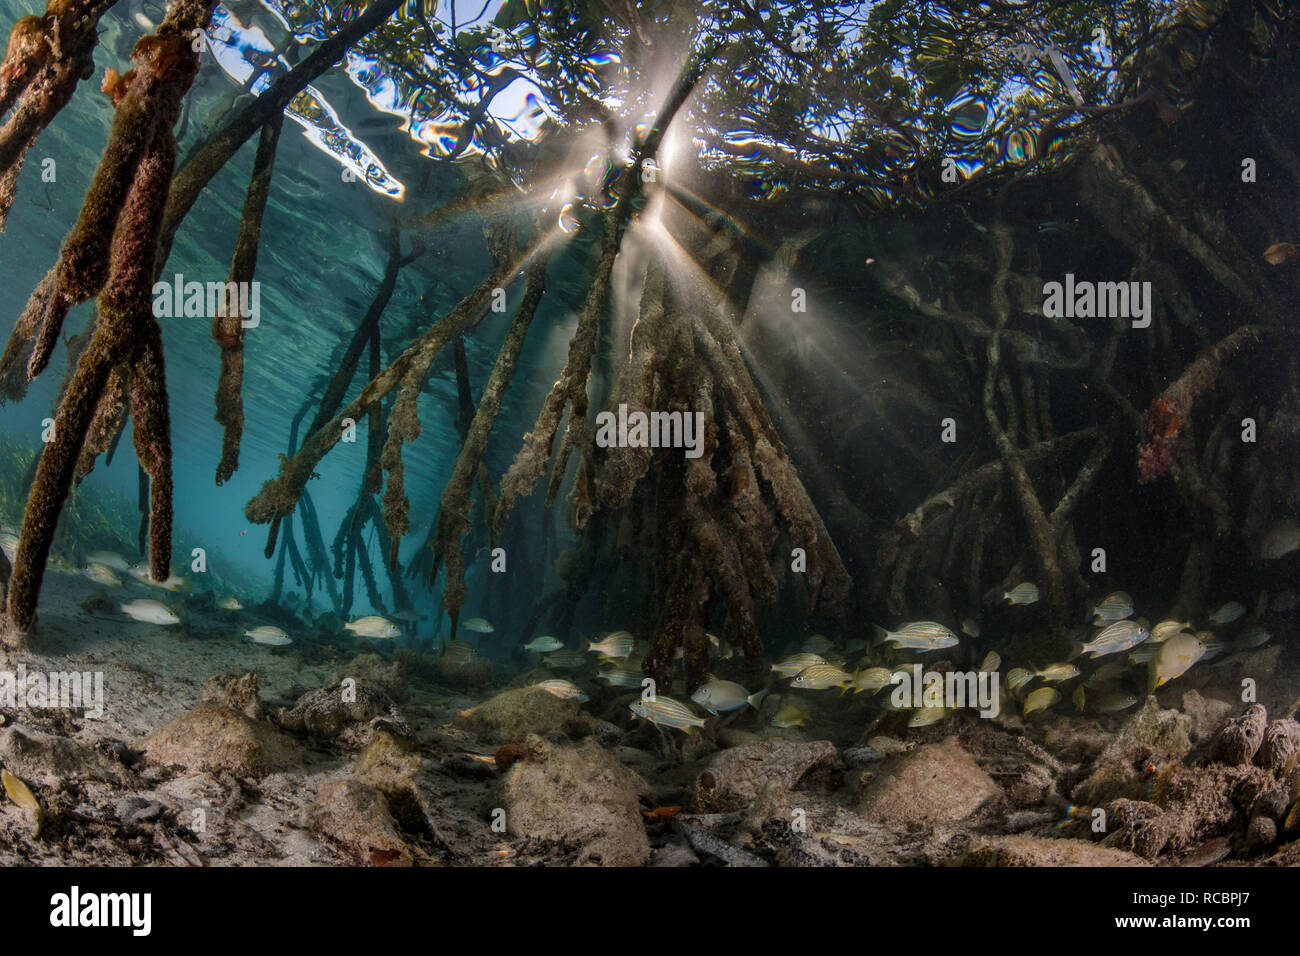 Mangrovie sono vivai per molte specie di pesci e altri animali. Foto Stock